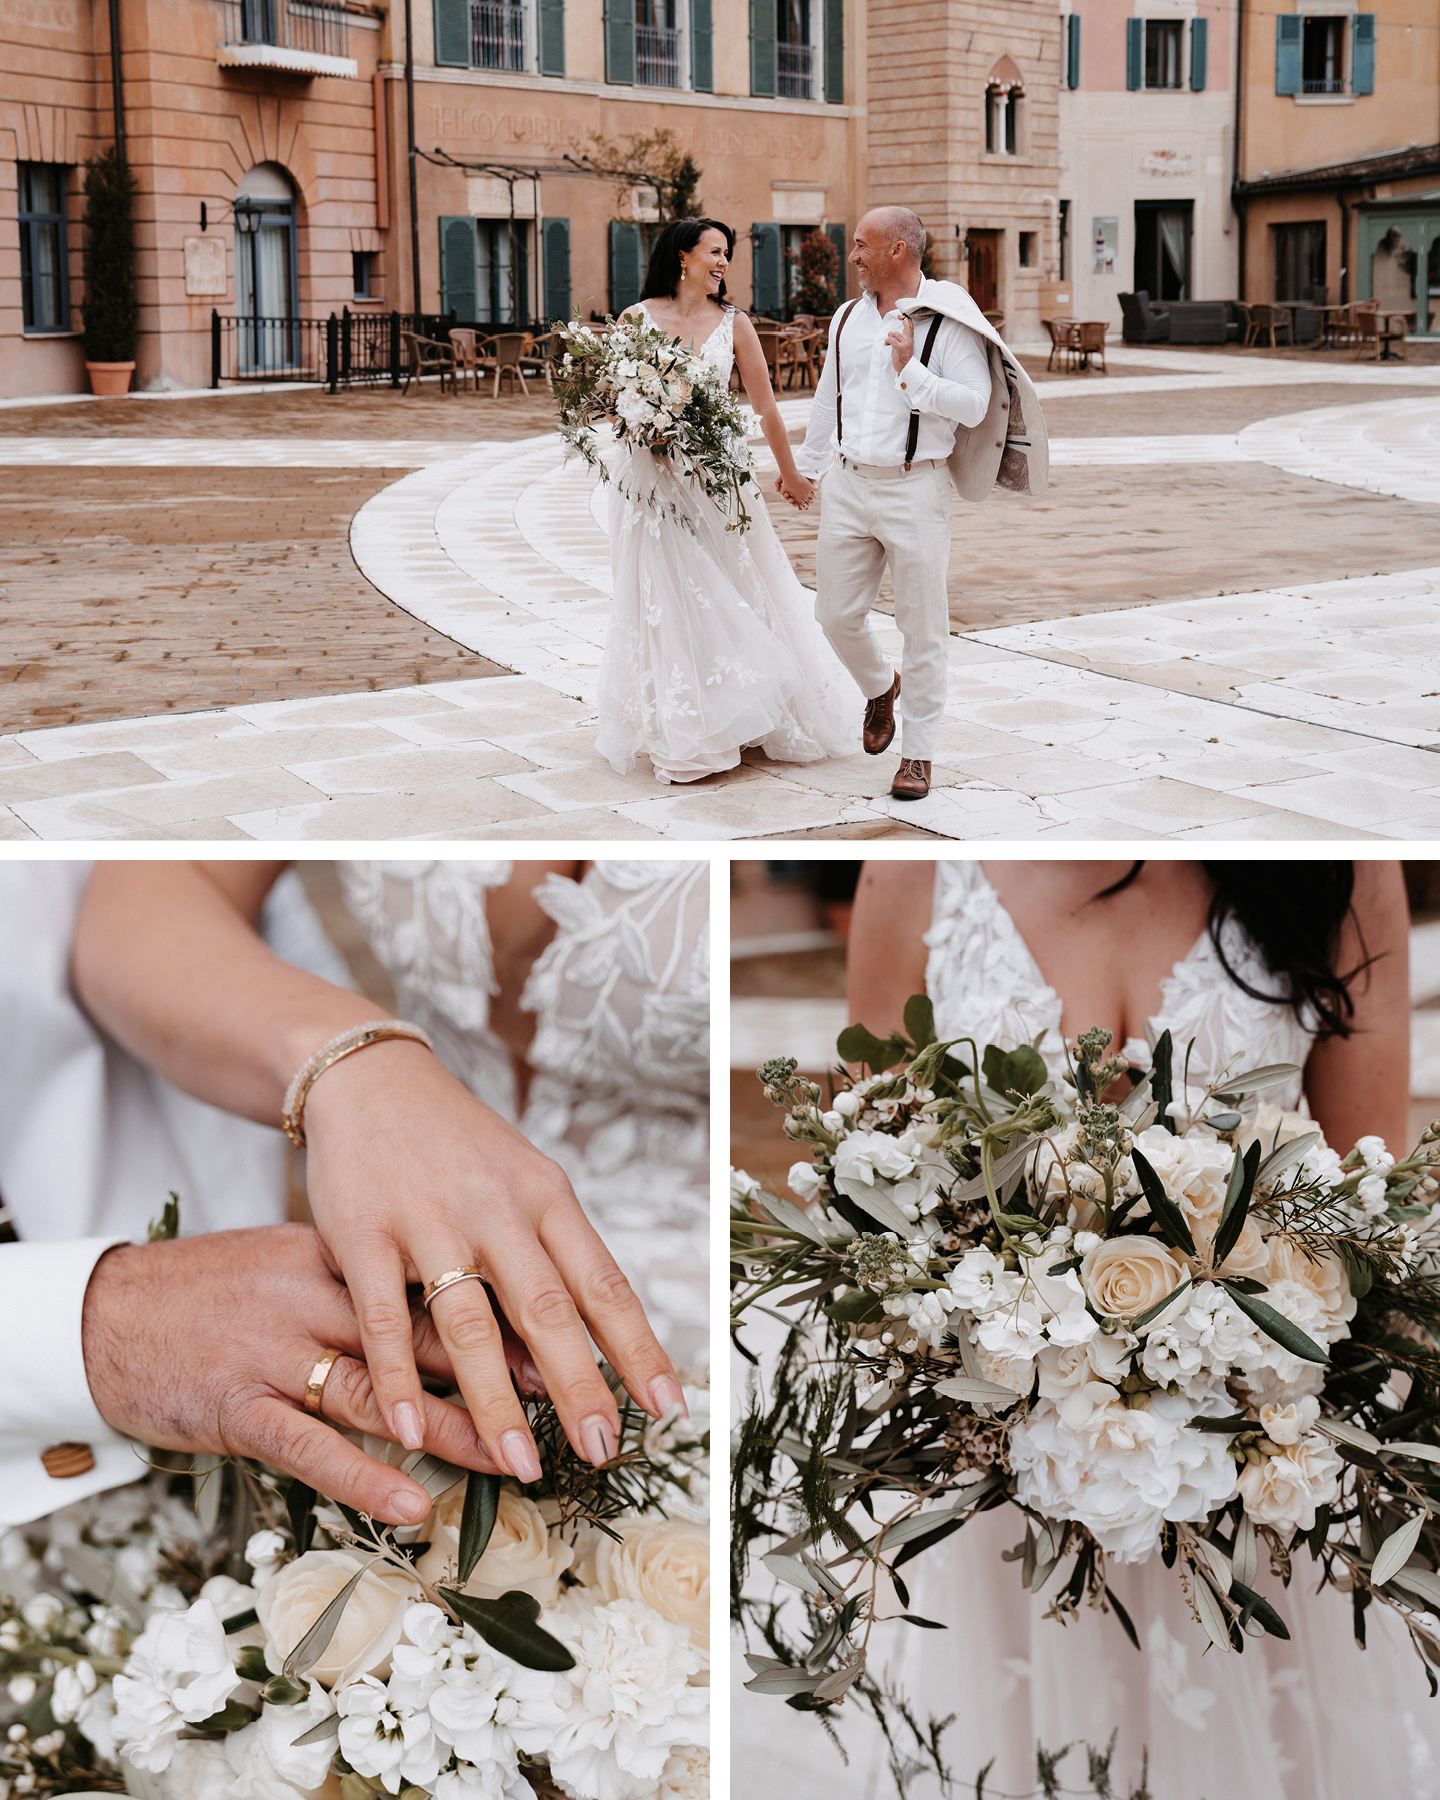 Brautpaar im Boho Greenry Look schlendert hat in Hand zum Traualter. Die Braut trägt einen großen Brautstrauß mit weißen Blüten und Olivenzweigen.